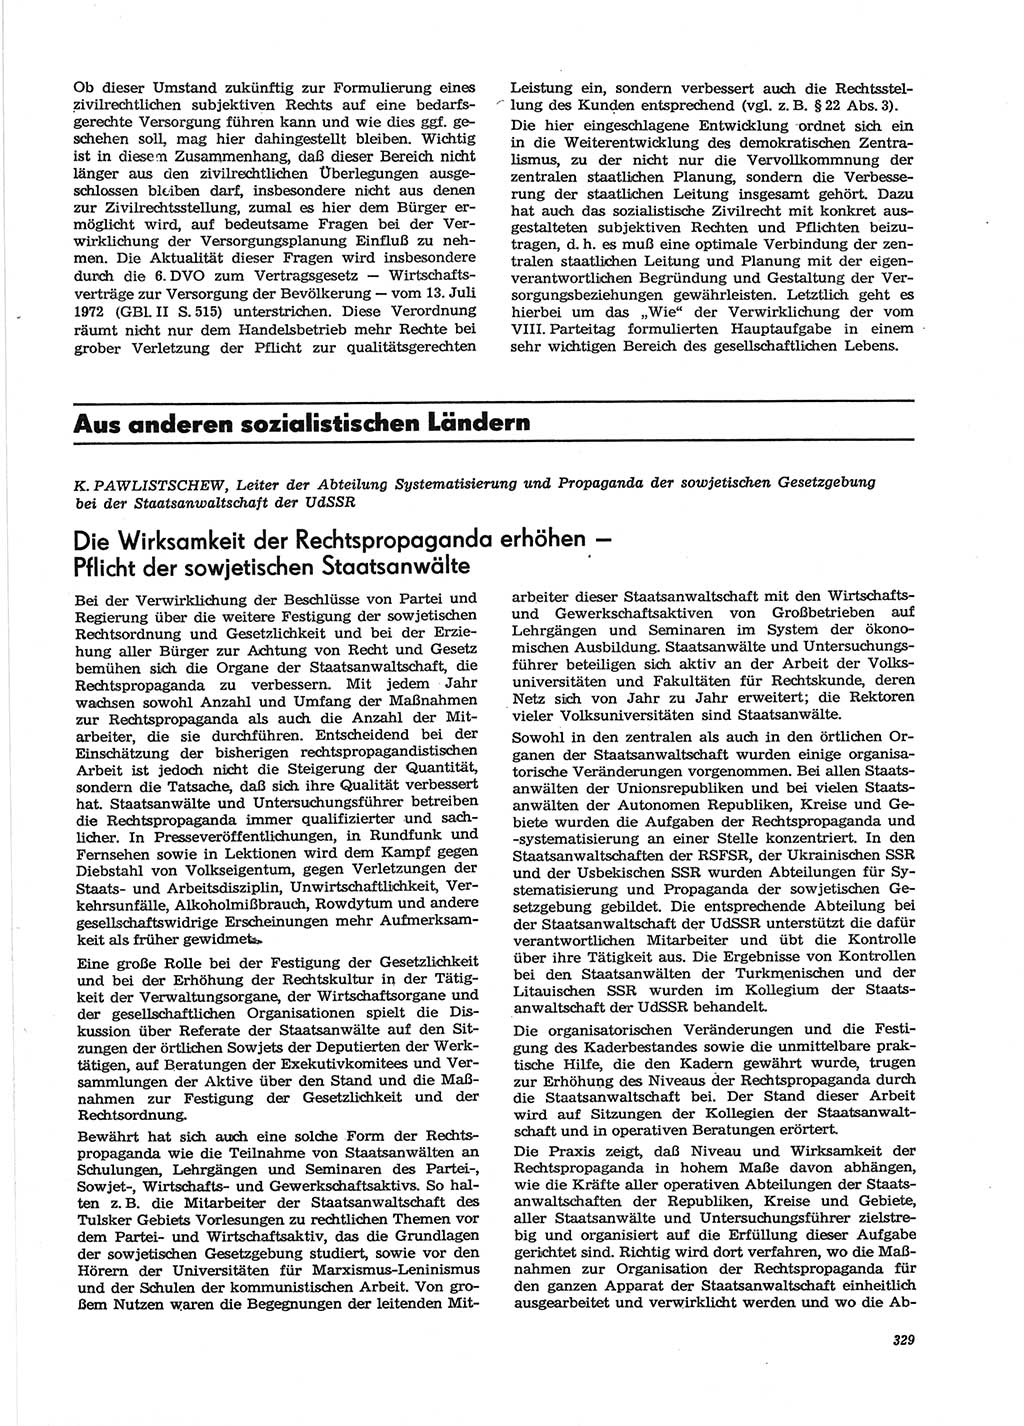 Neue Justiz (NJ), Zeitschrift für Recht und Rechtswissenschaft [Deutsche Demokratische Republik (DDR)], 28. Jahrgang 1974, Seite 329 (NJ DDR 1974, S. 329)